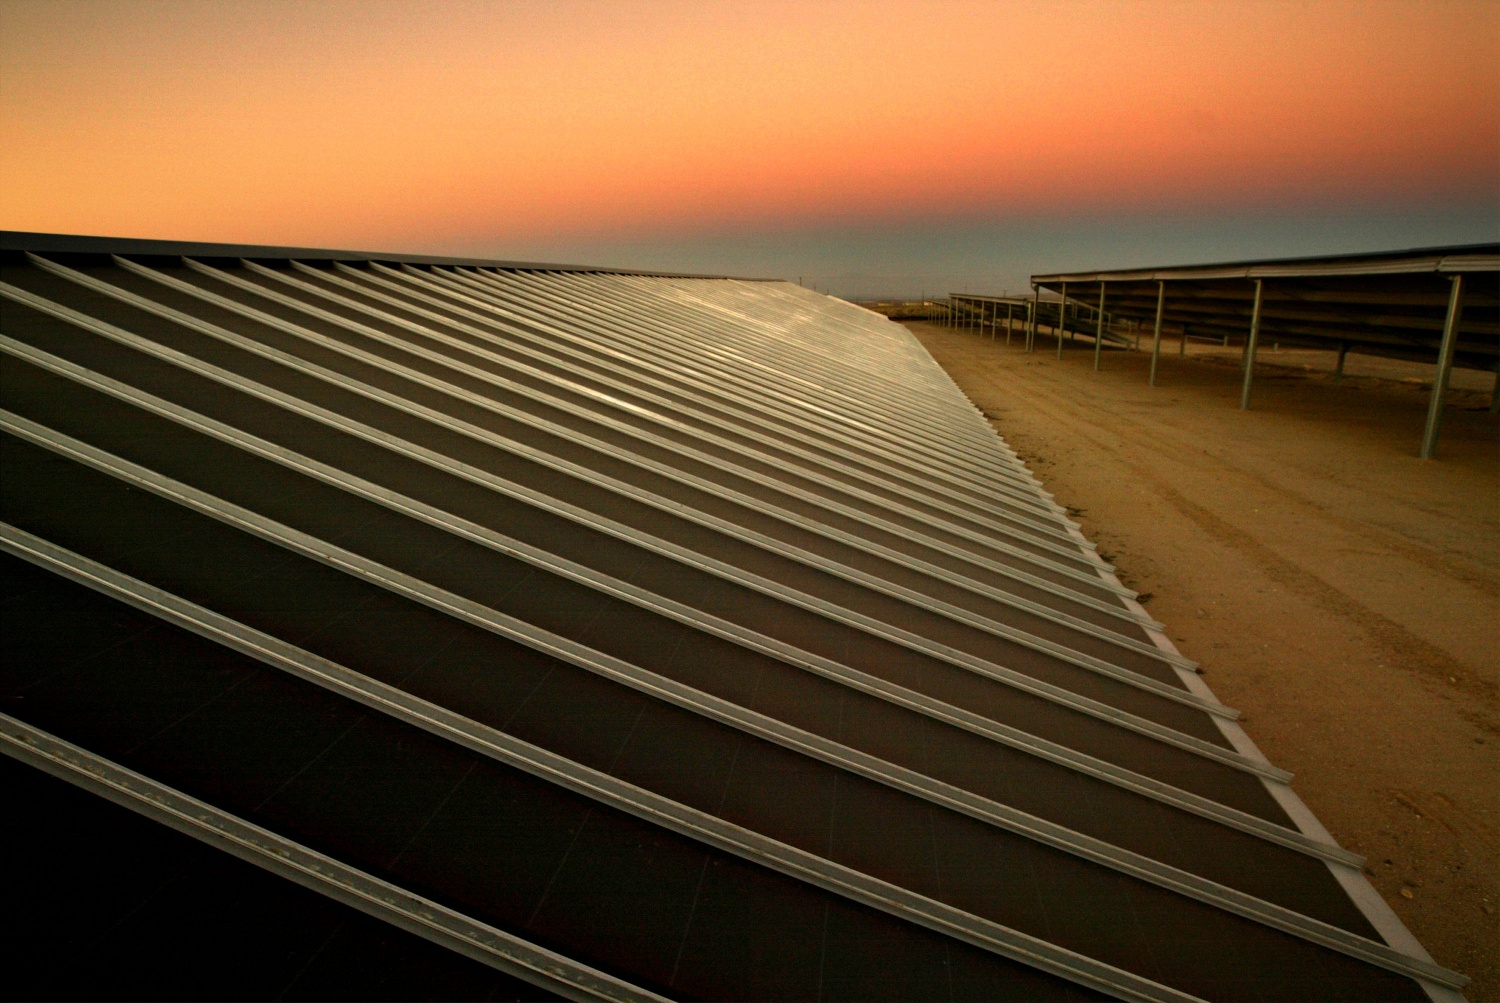 雪佛龙安装加利福尼亚第一太阳能项目的石油生产